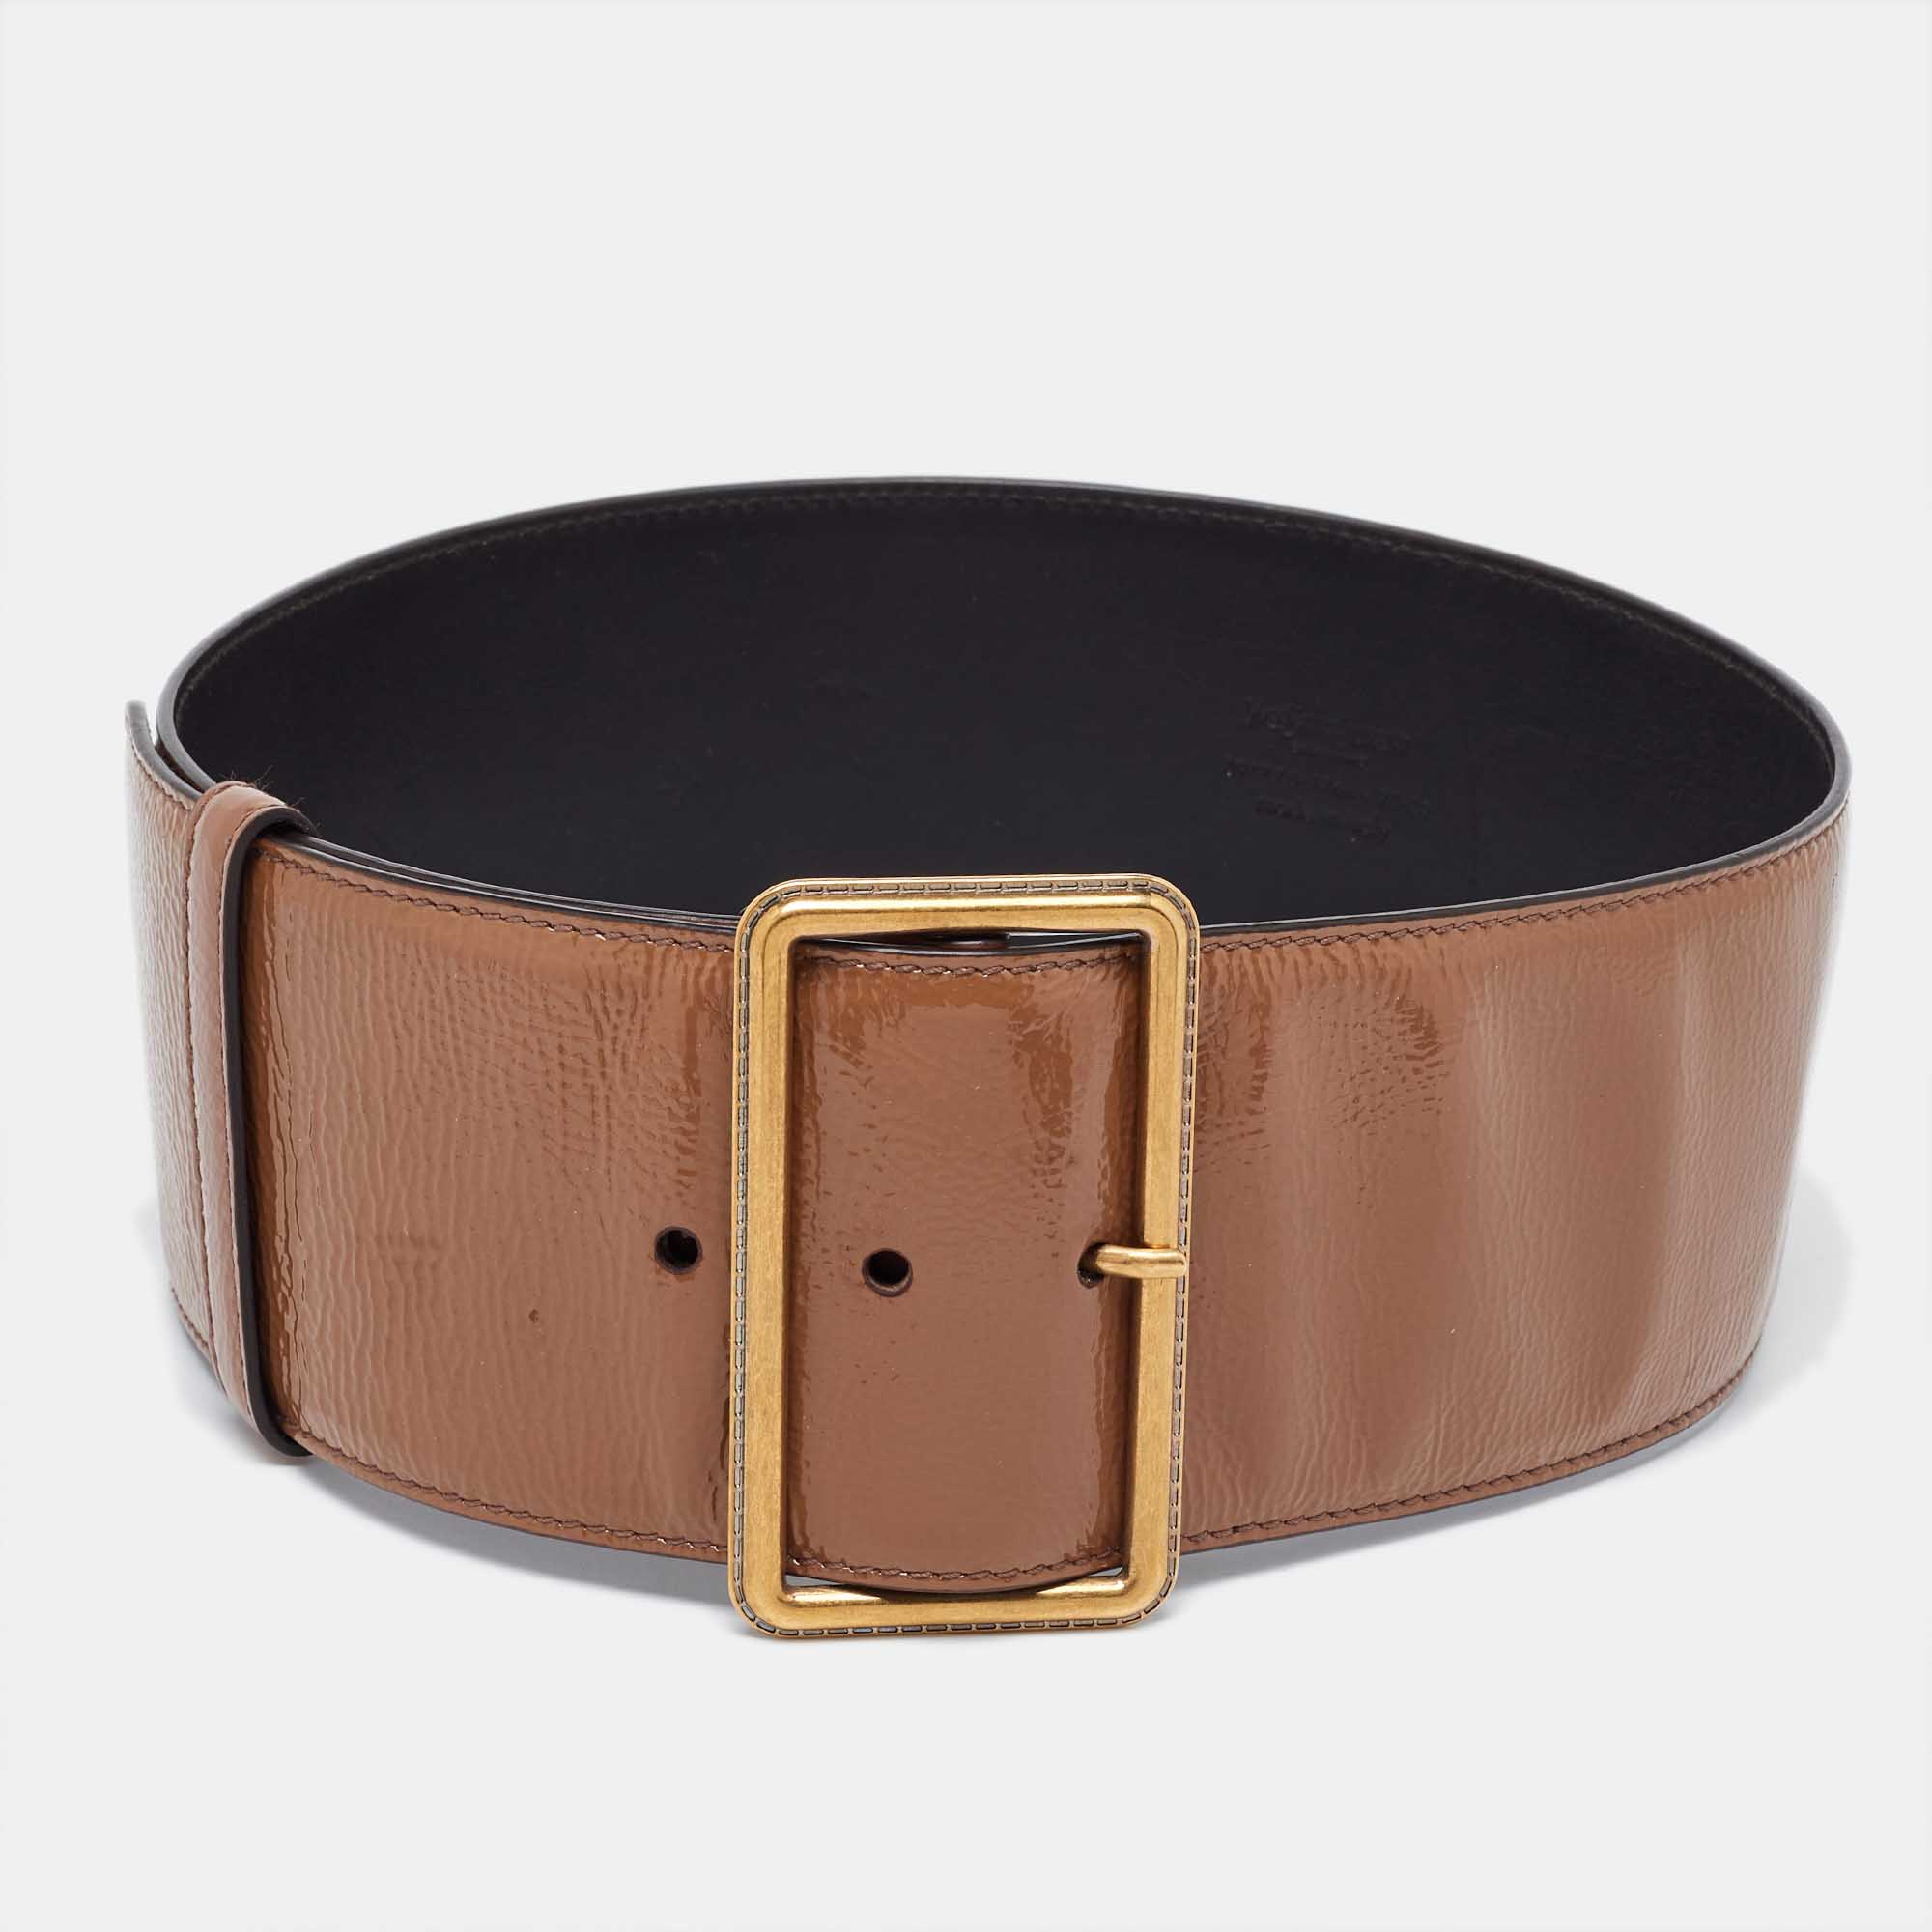 Saint laurent paris saint laurent brown patent leather buckle wide belt 70cm